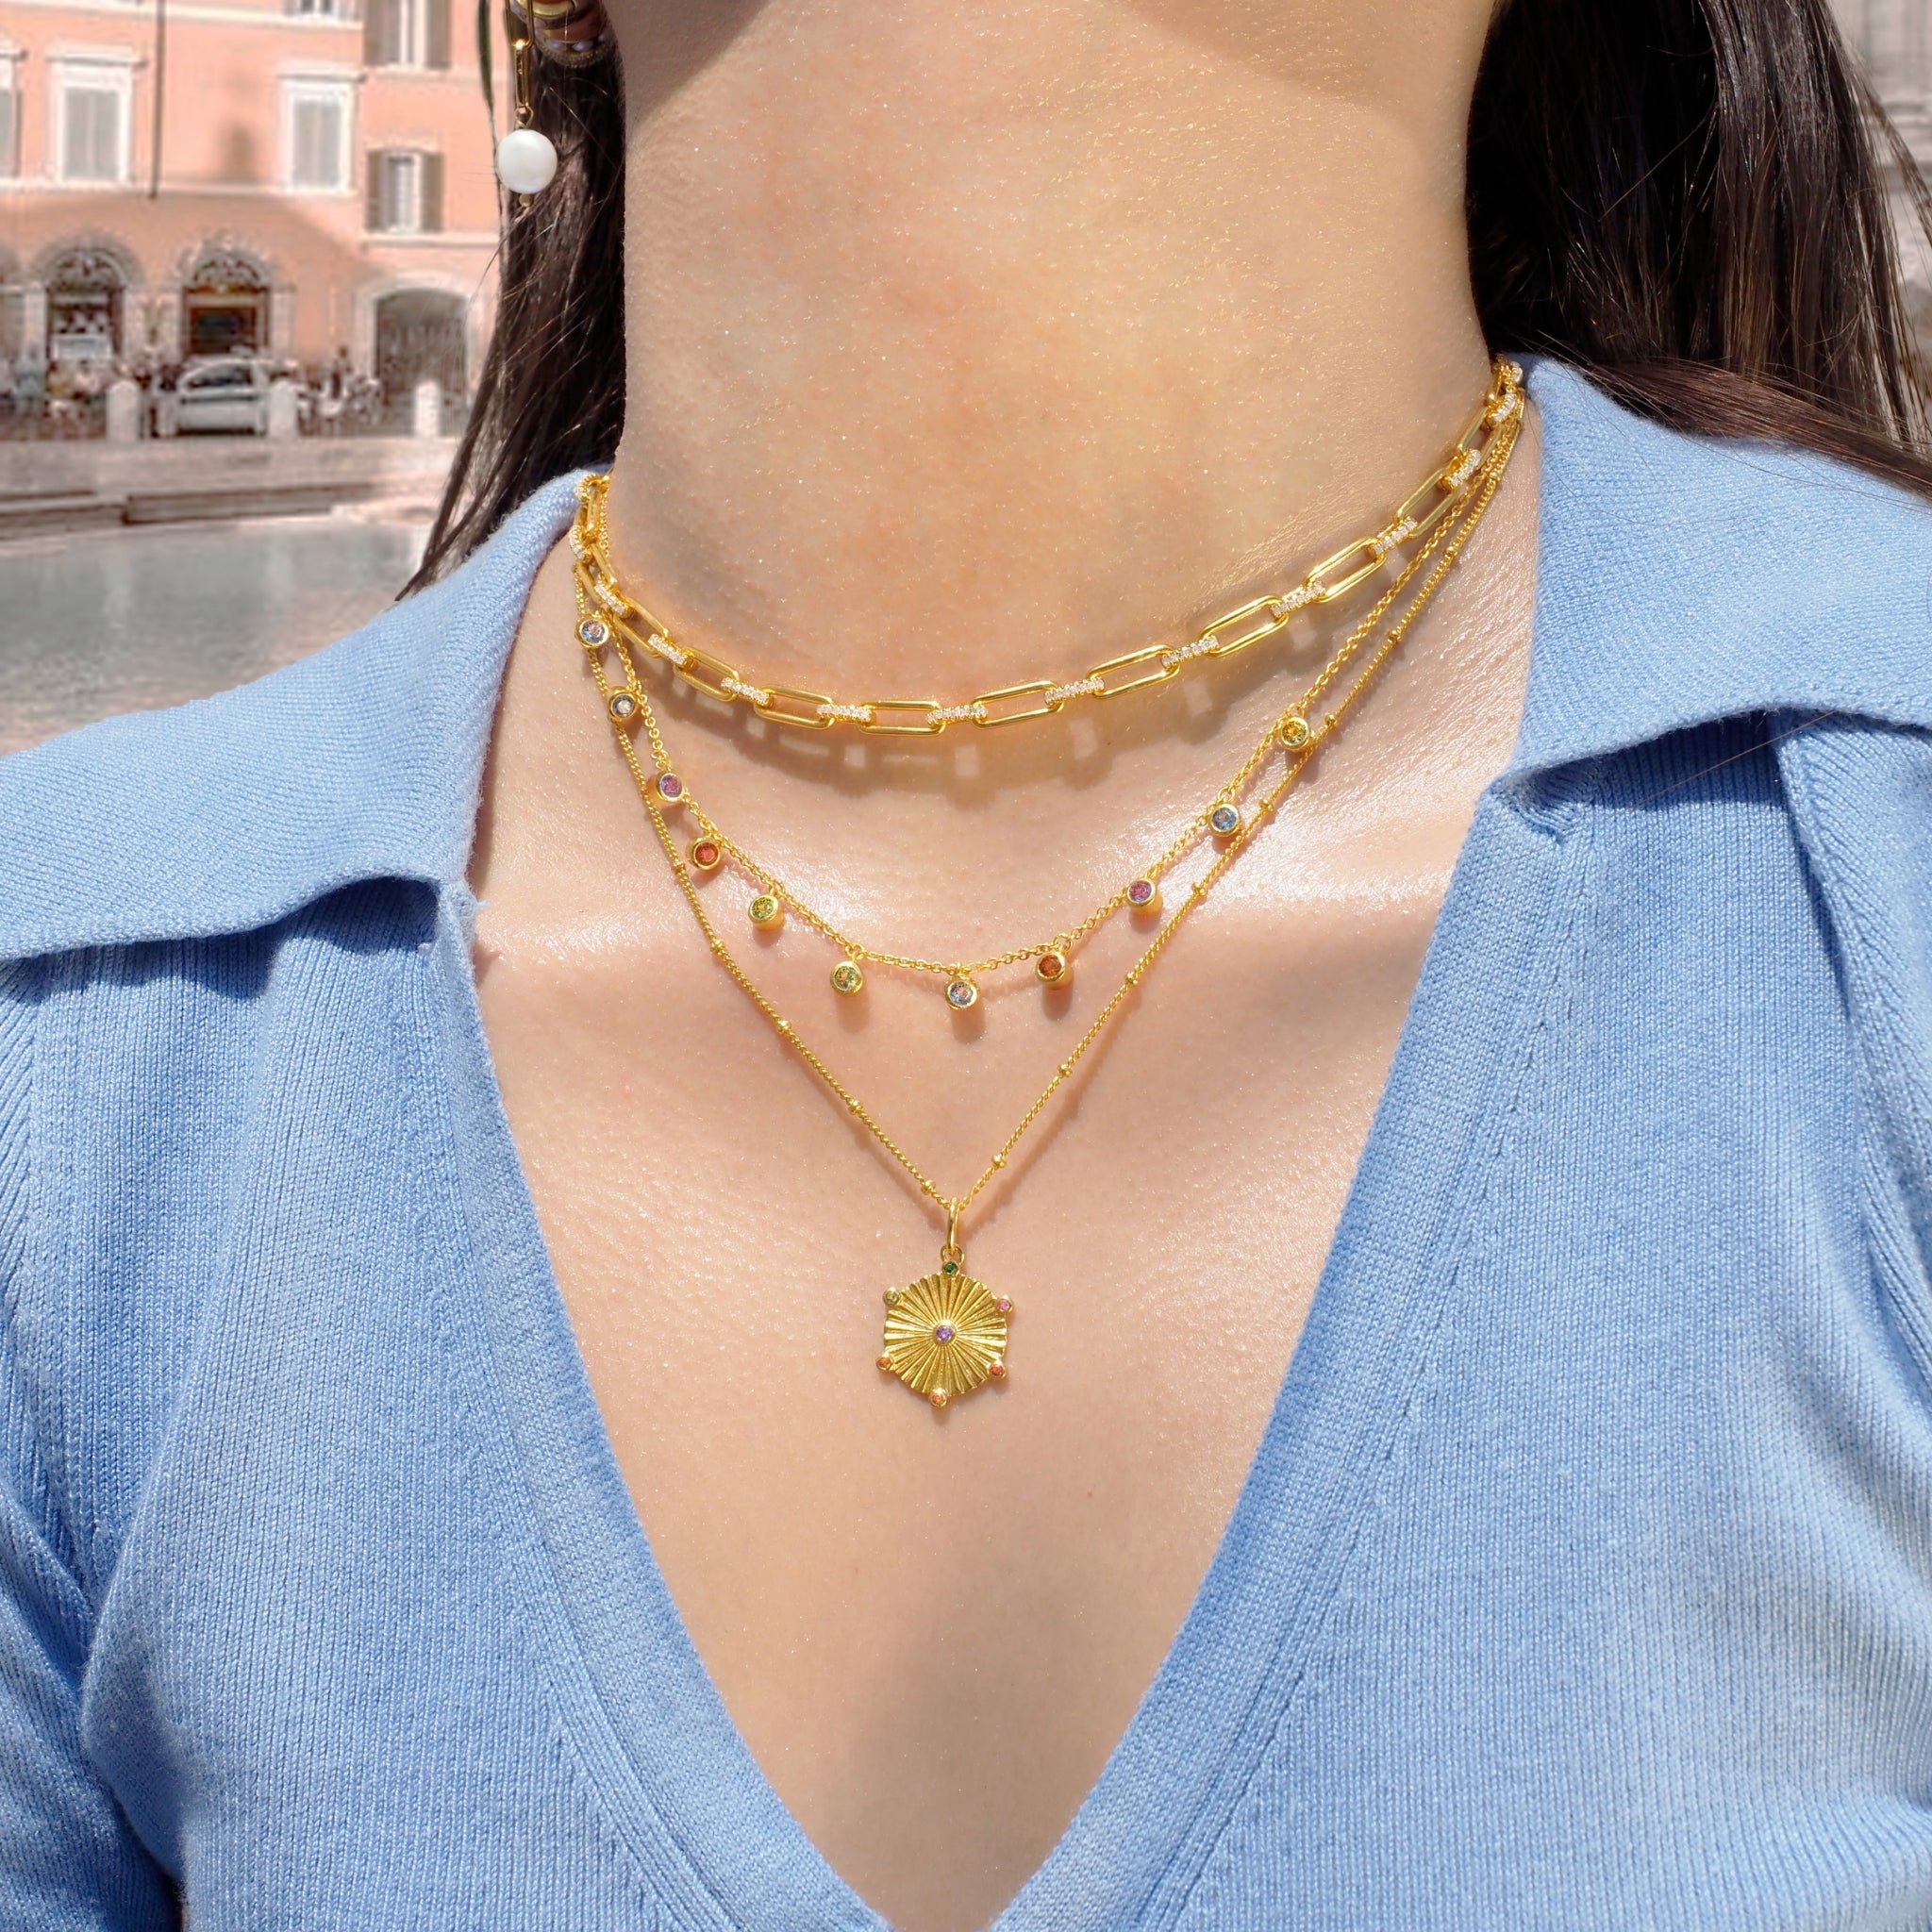 Kyla choker necklace